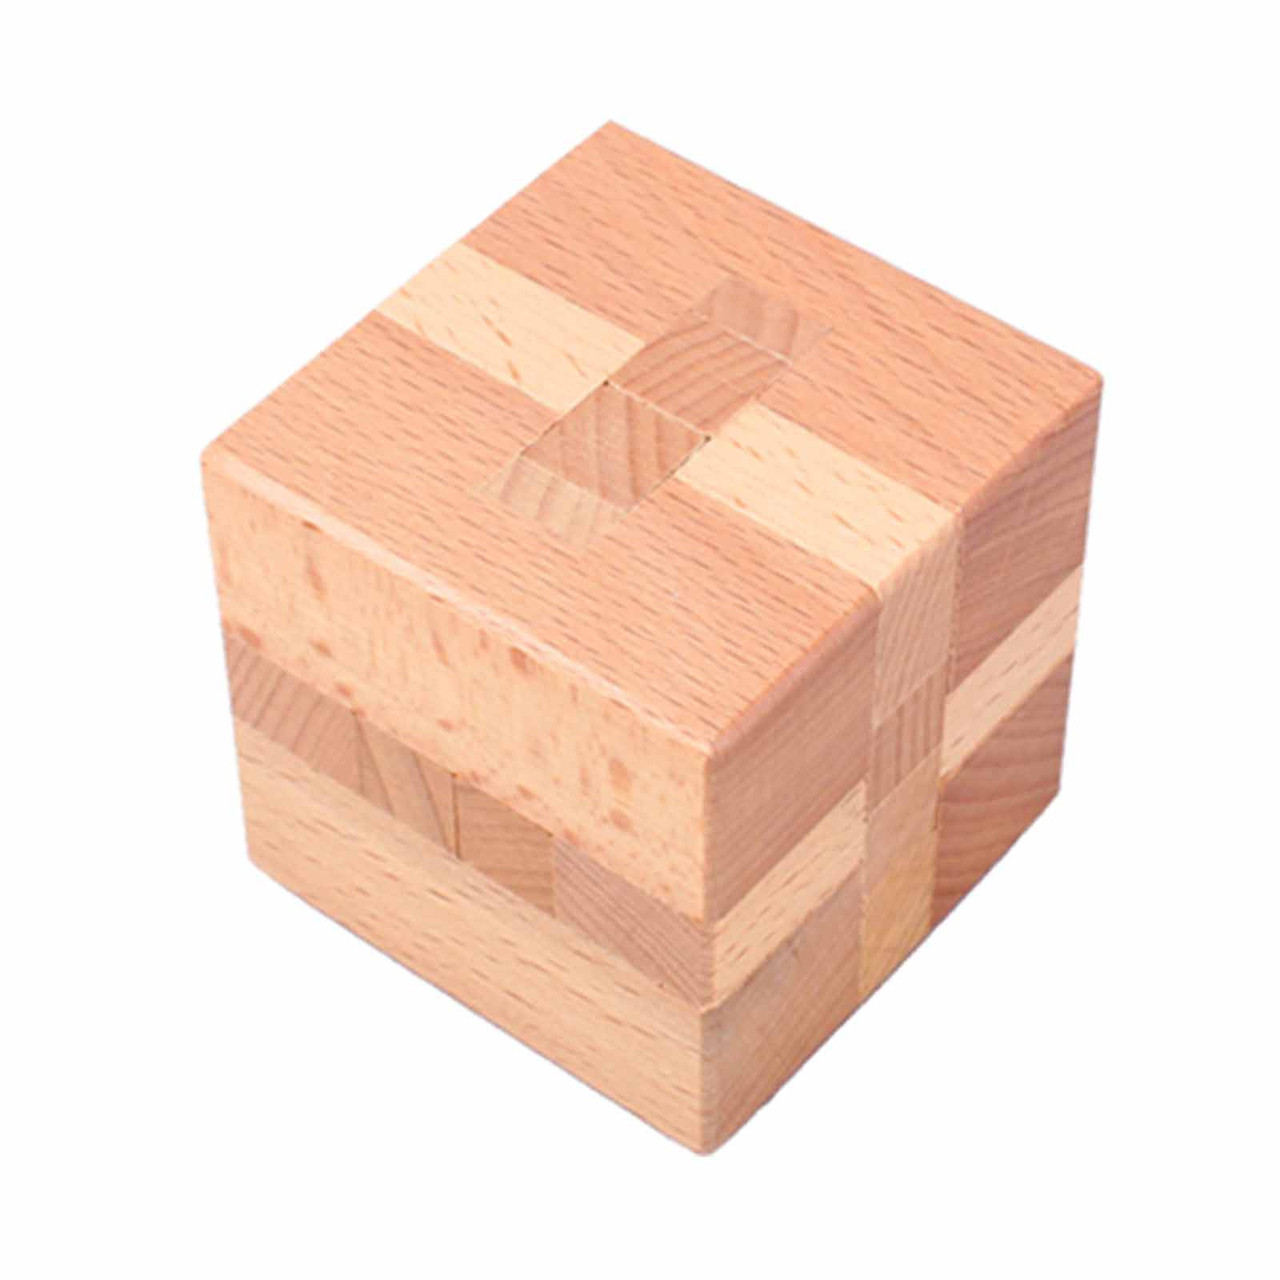 IQ Wooden Puzzle, 3D - Cube - Black